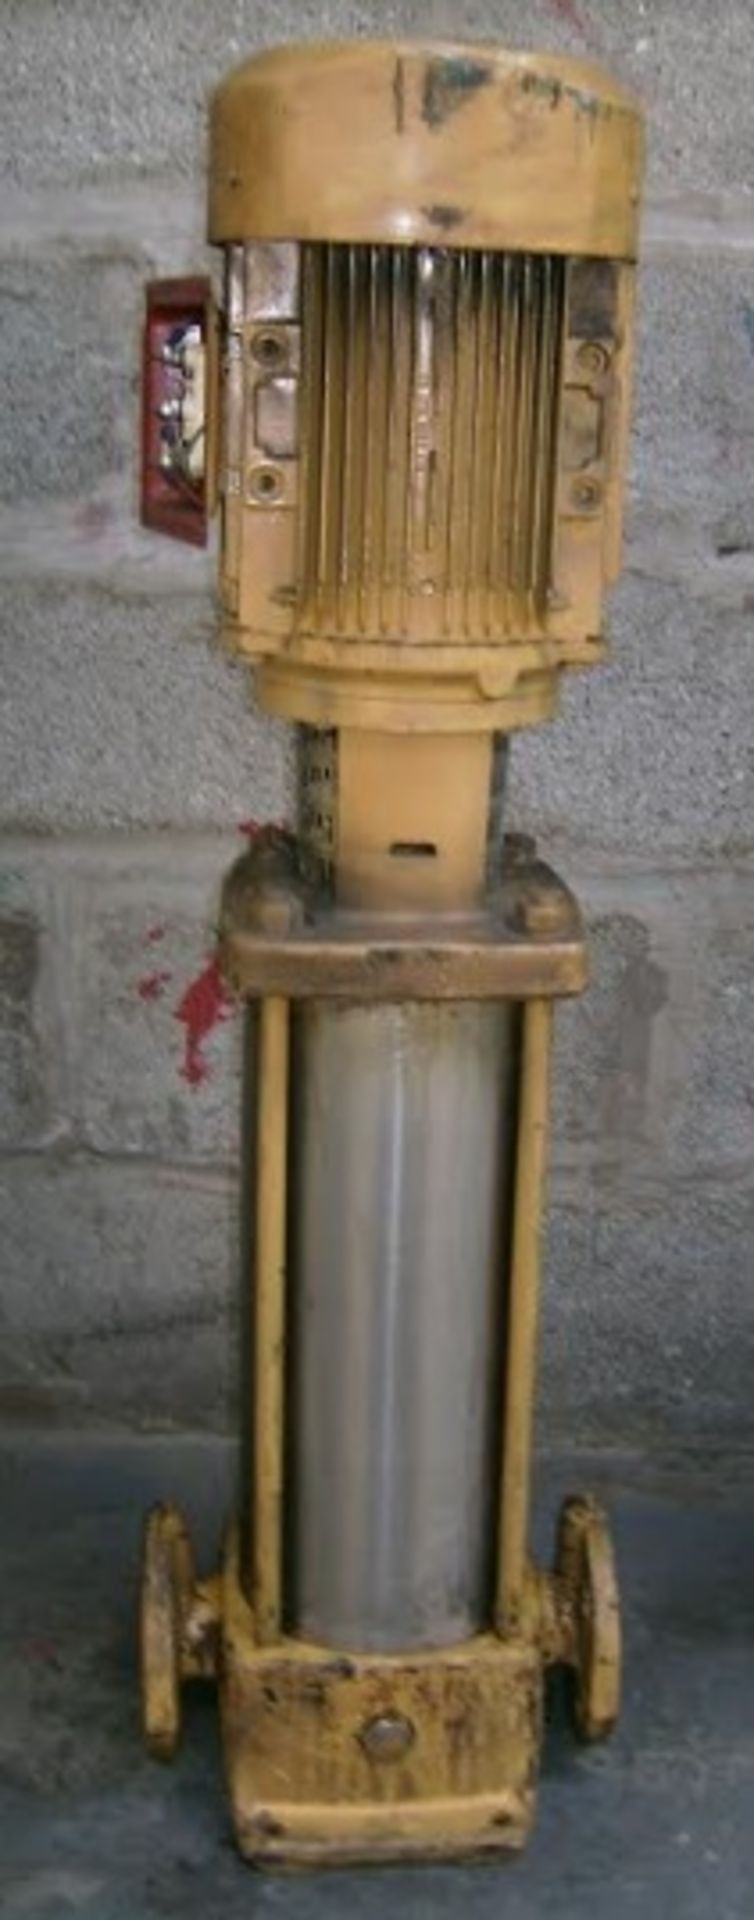 Heavy Duty Water Pump